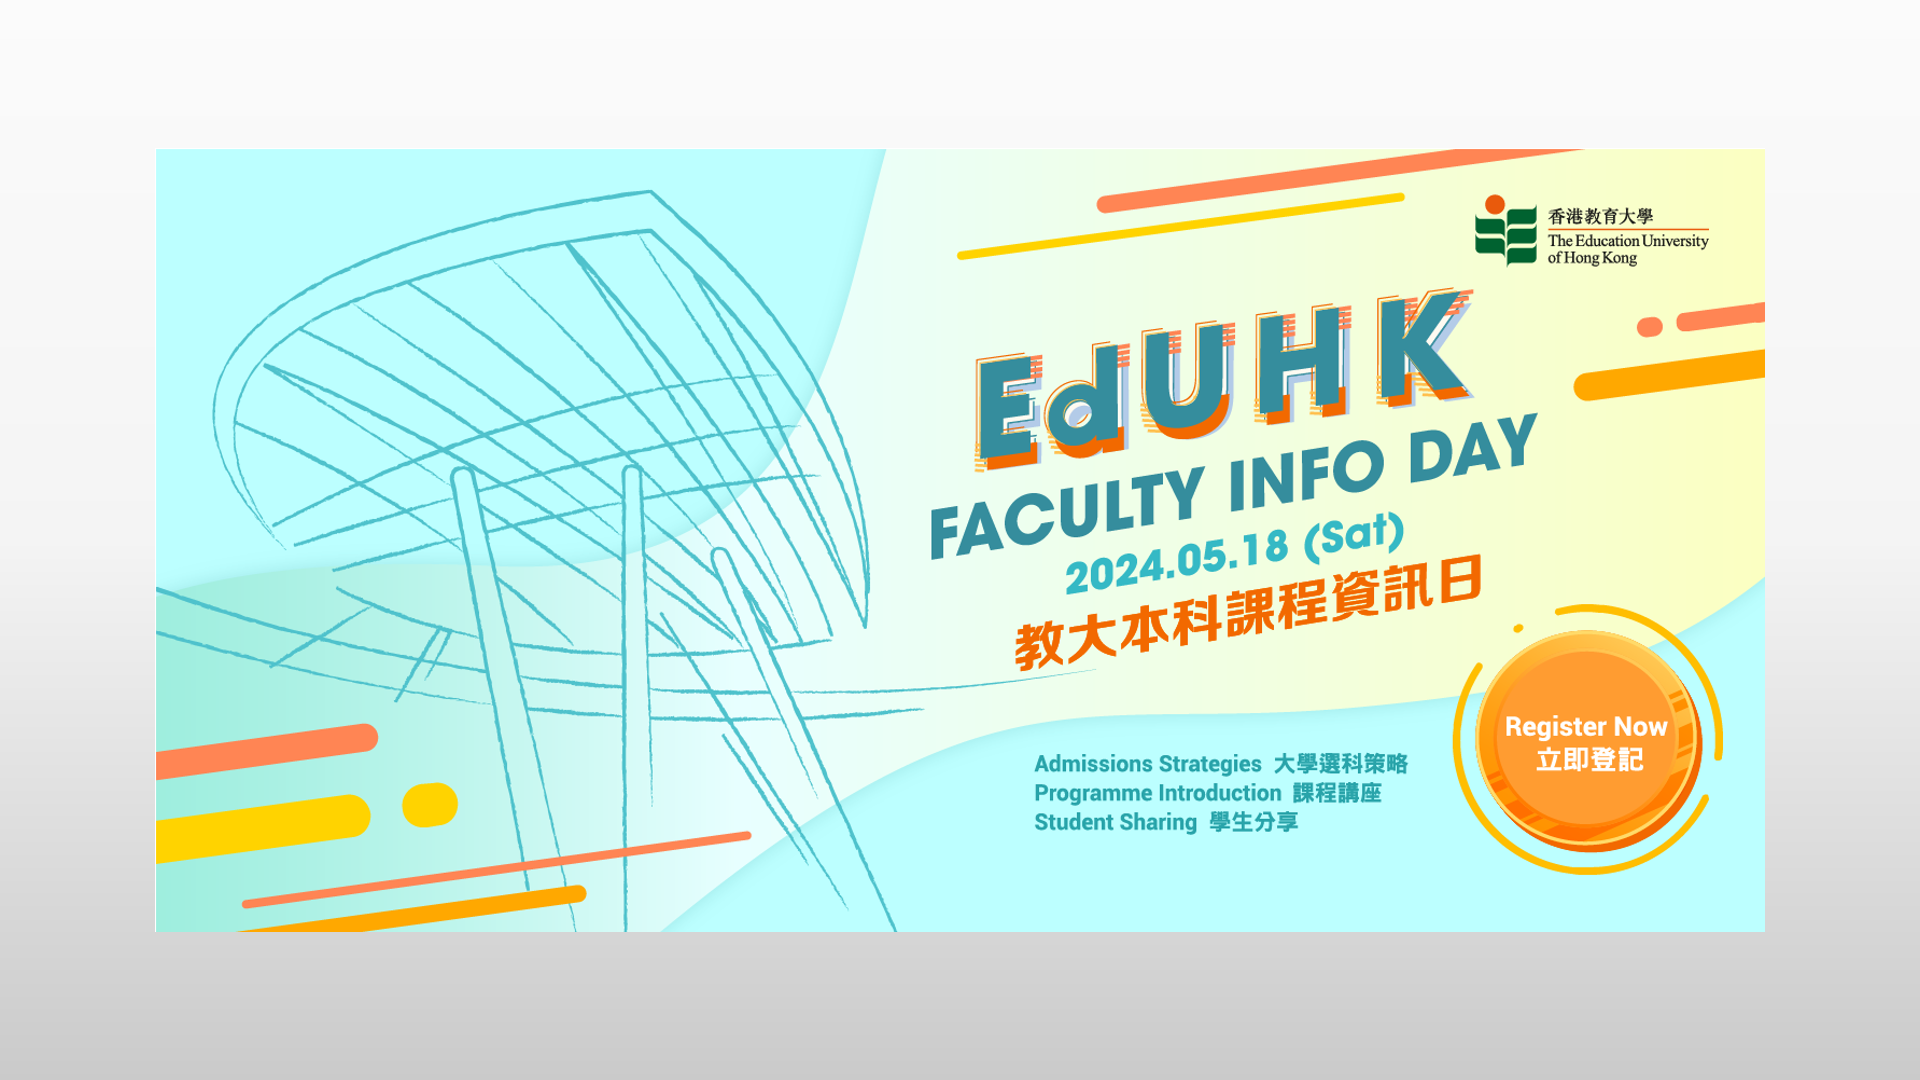 EdUHK Faculty Info Day 2024